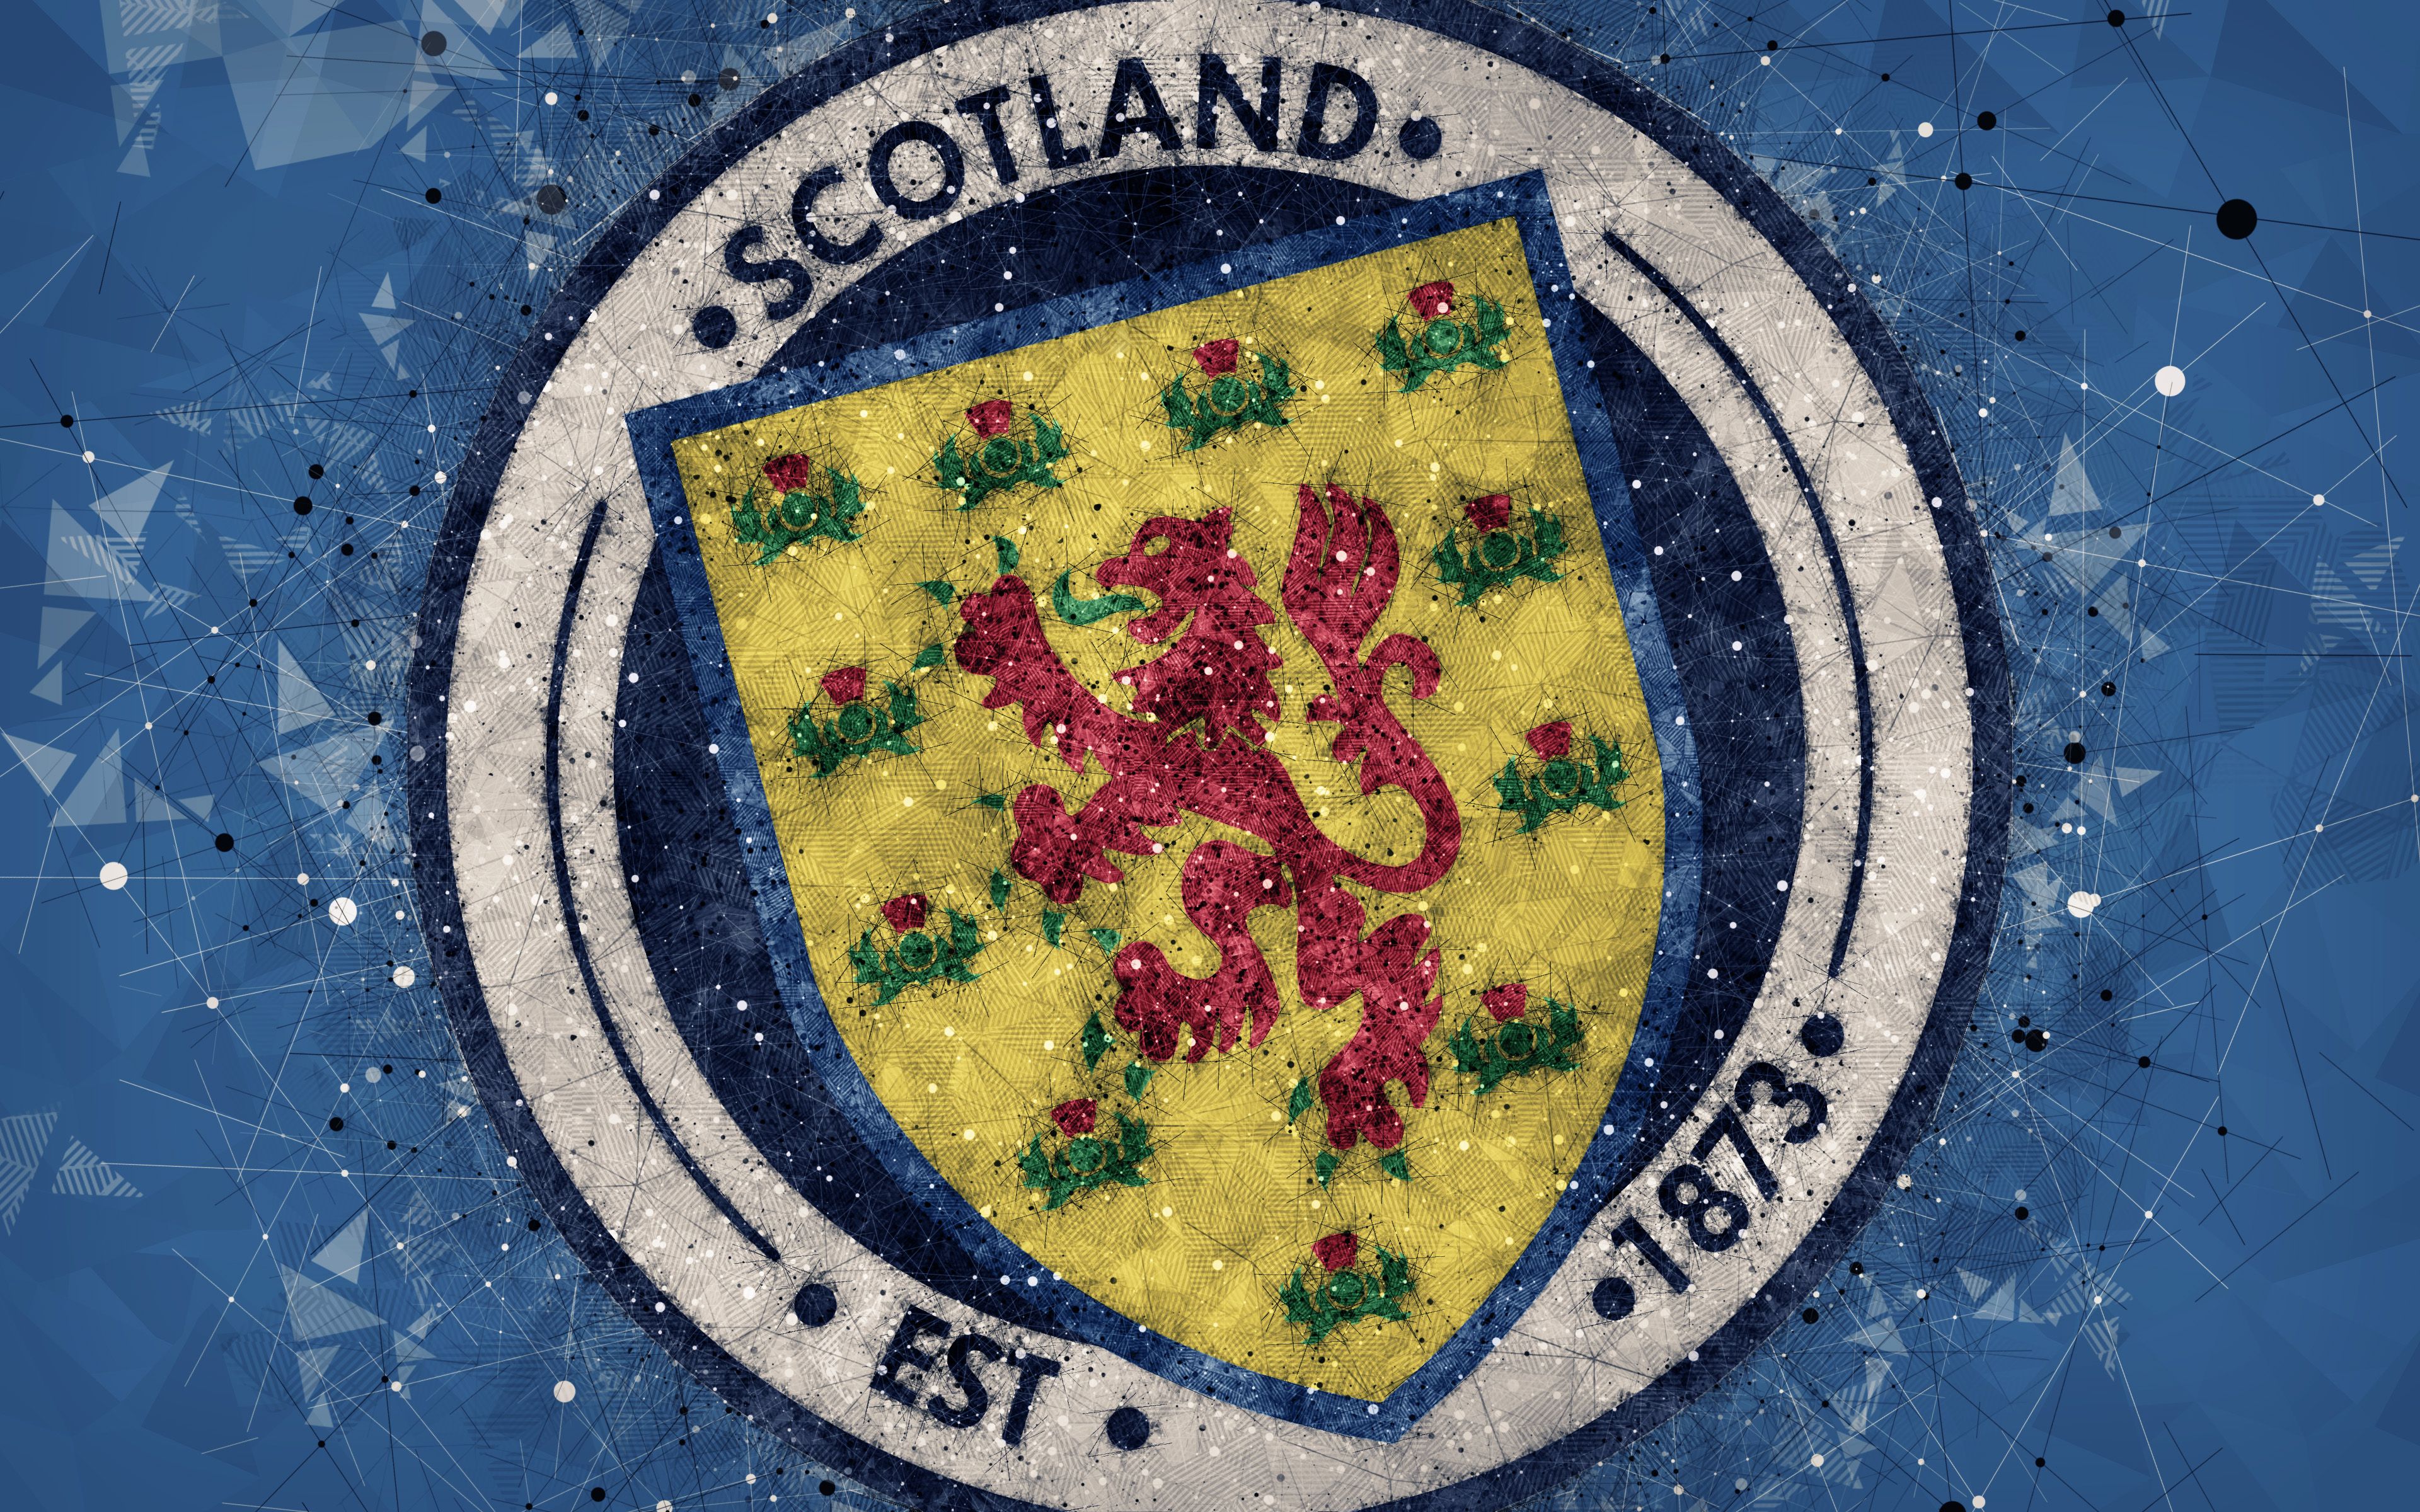 Scotland National Football Team 4k Ultra HD Wallpaper